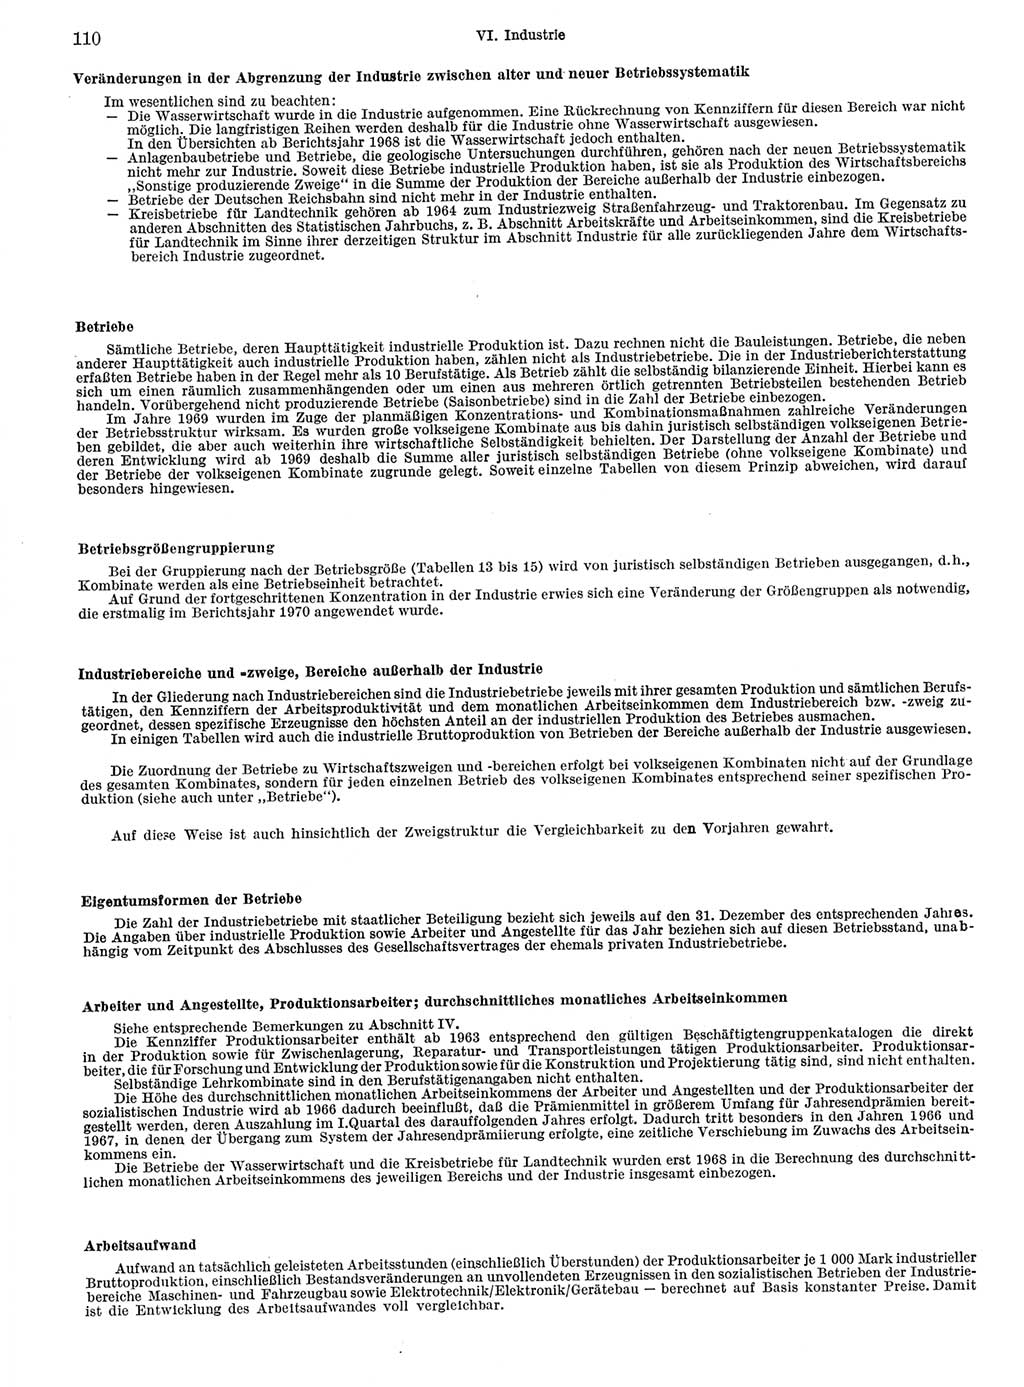 Statistisches Jahrbuch der Deutschen Demokratischen Republik (DDR) 1972, Seite 110 (Stat. Jb. DDR 1972, S. 110)